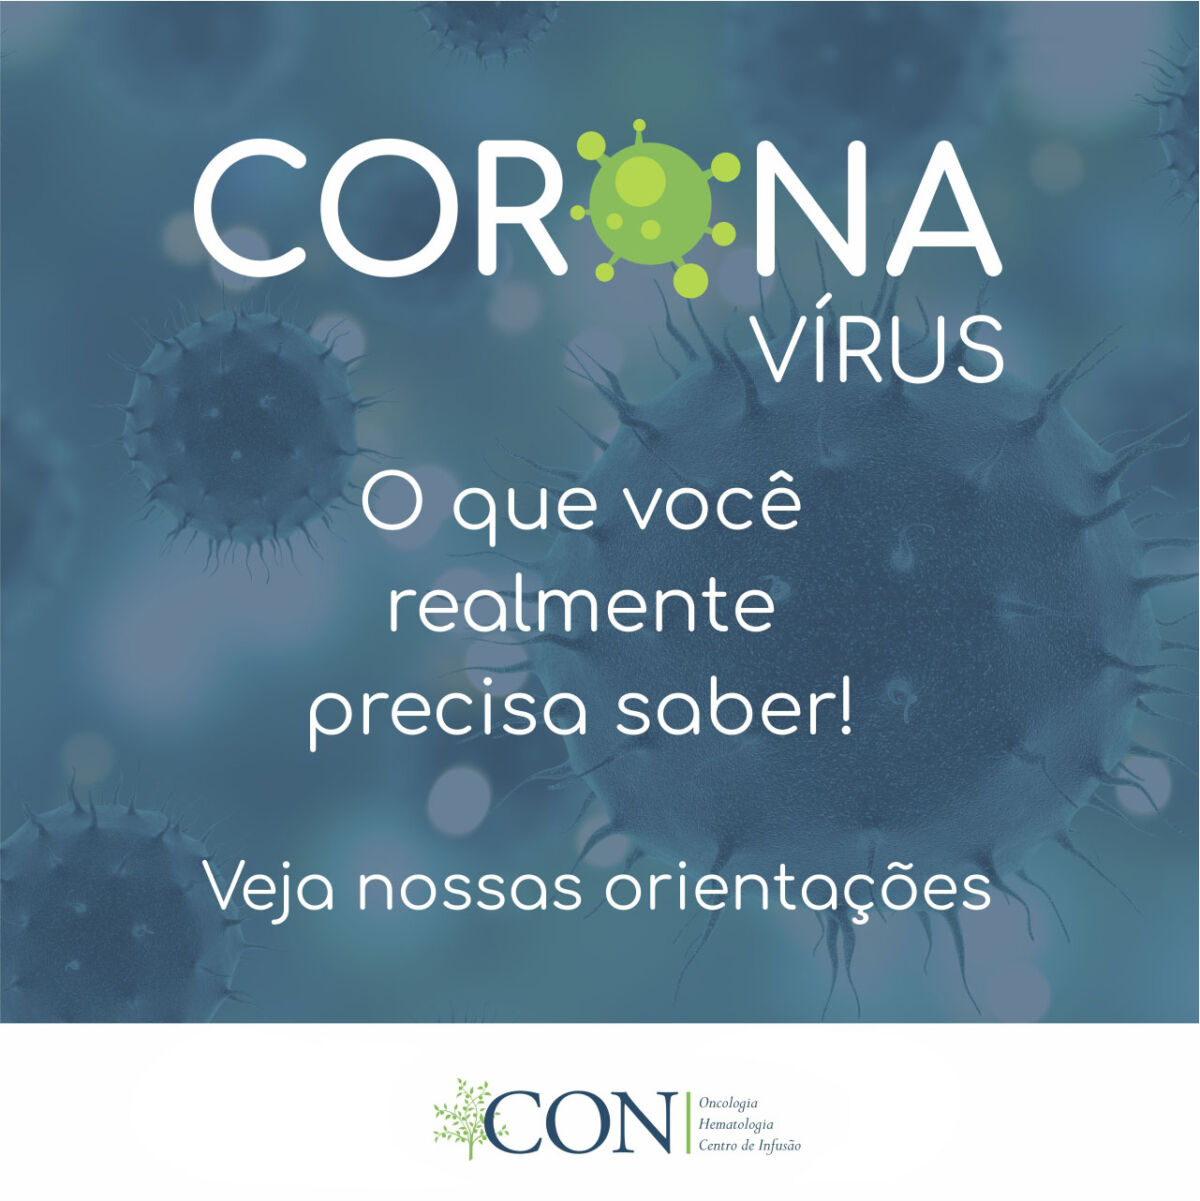 informe-do-con-em-relacao-a-pandemia-pelo-novo-coronavirus-covid-19-14-03-2020-1200x1201.jpeg